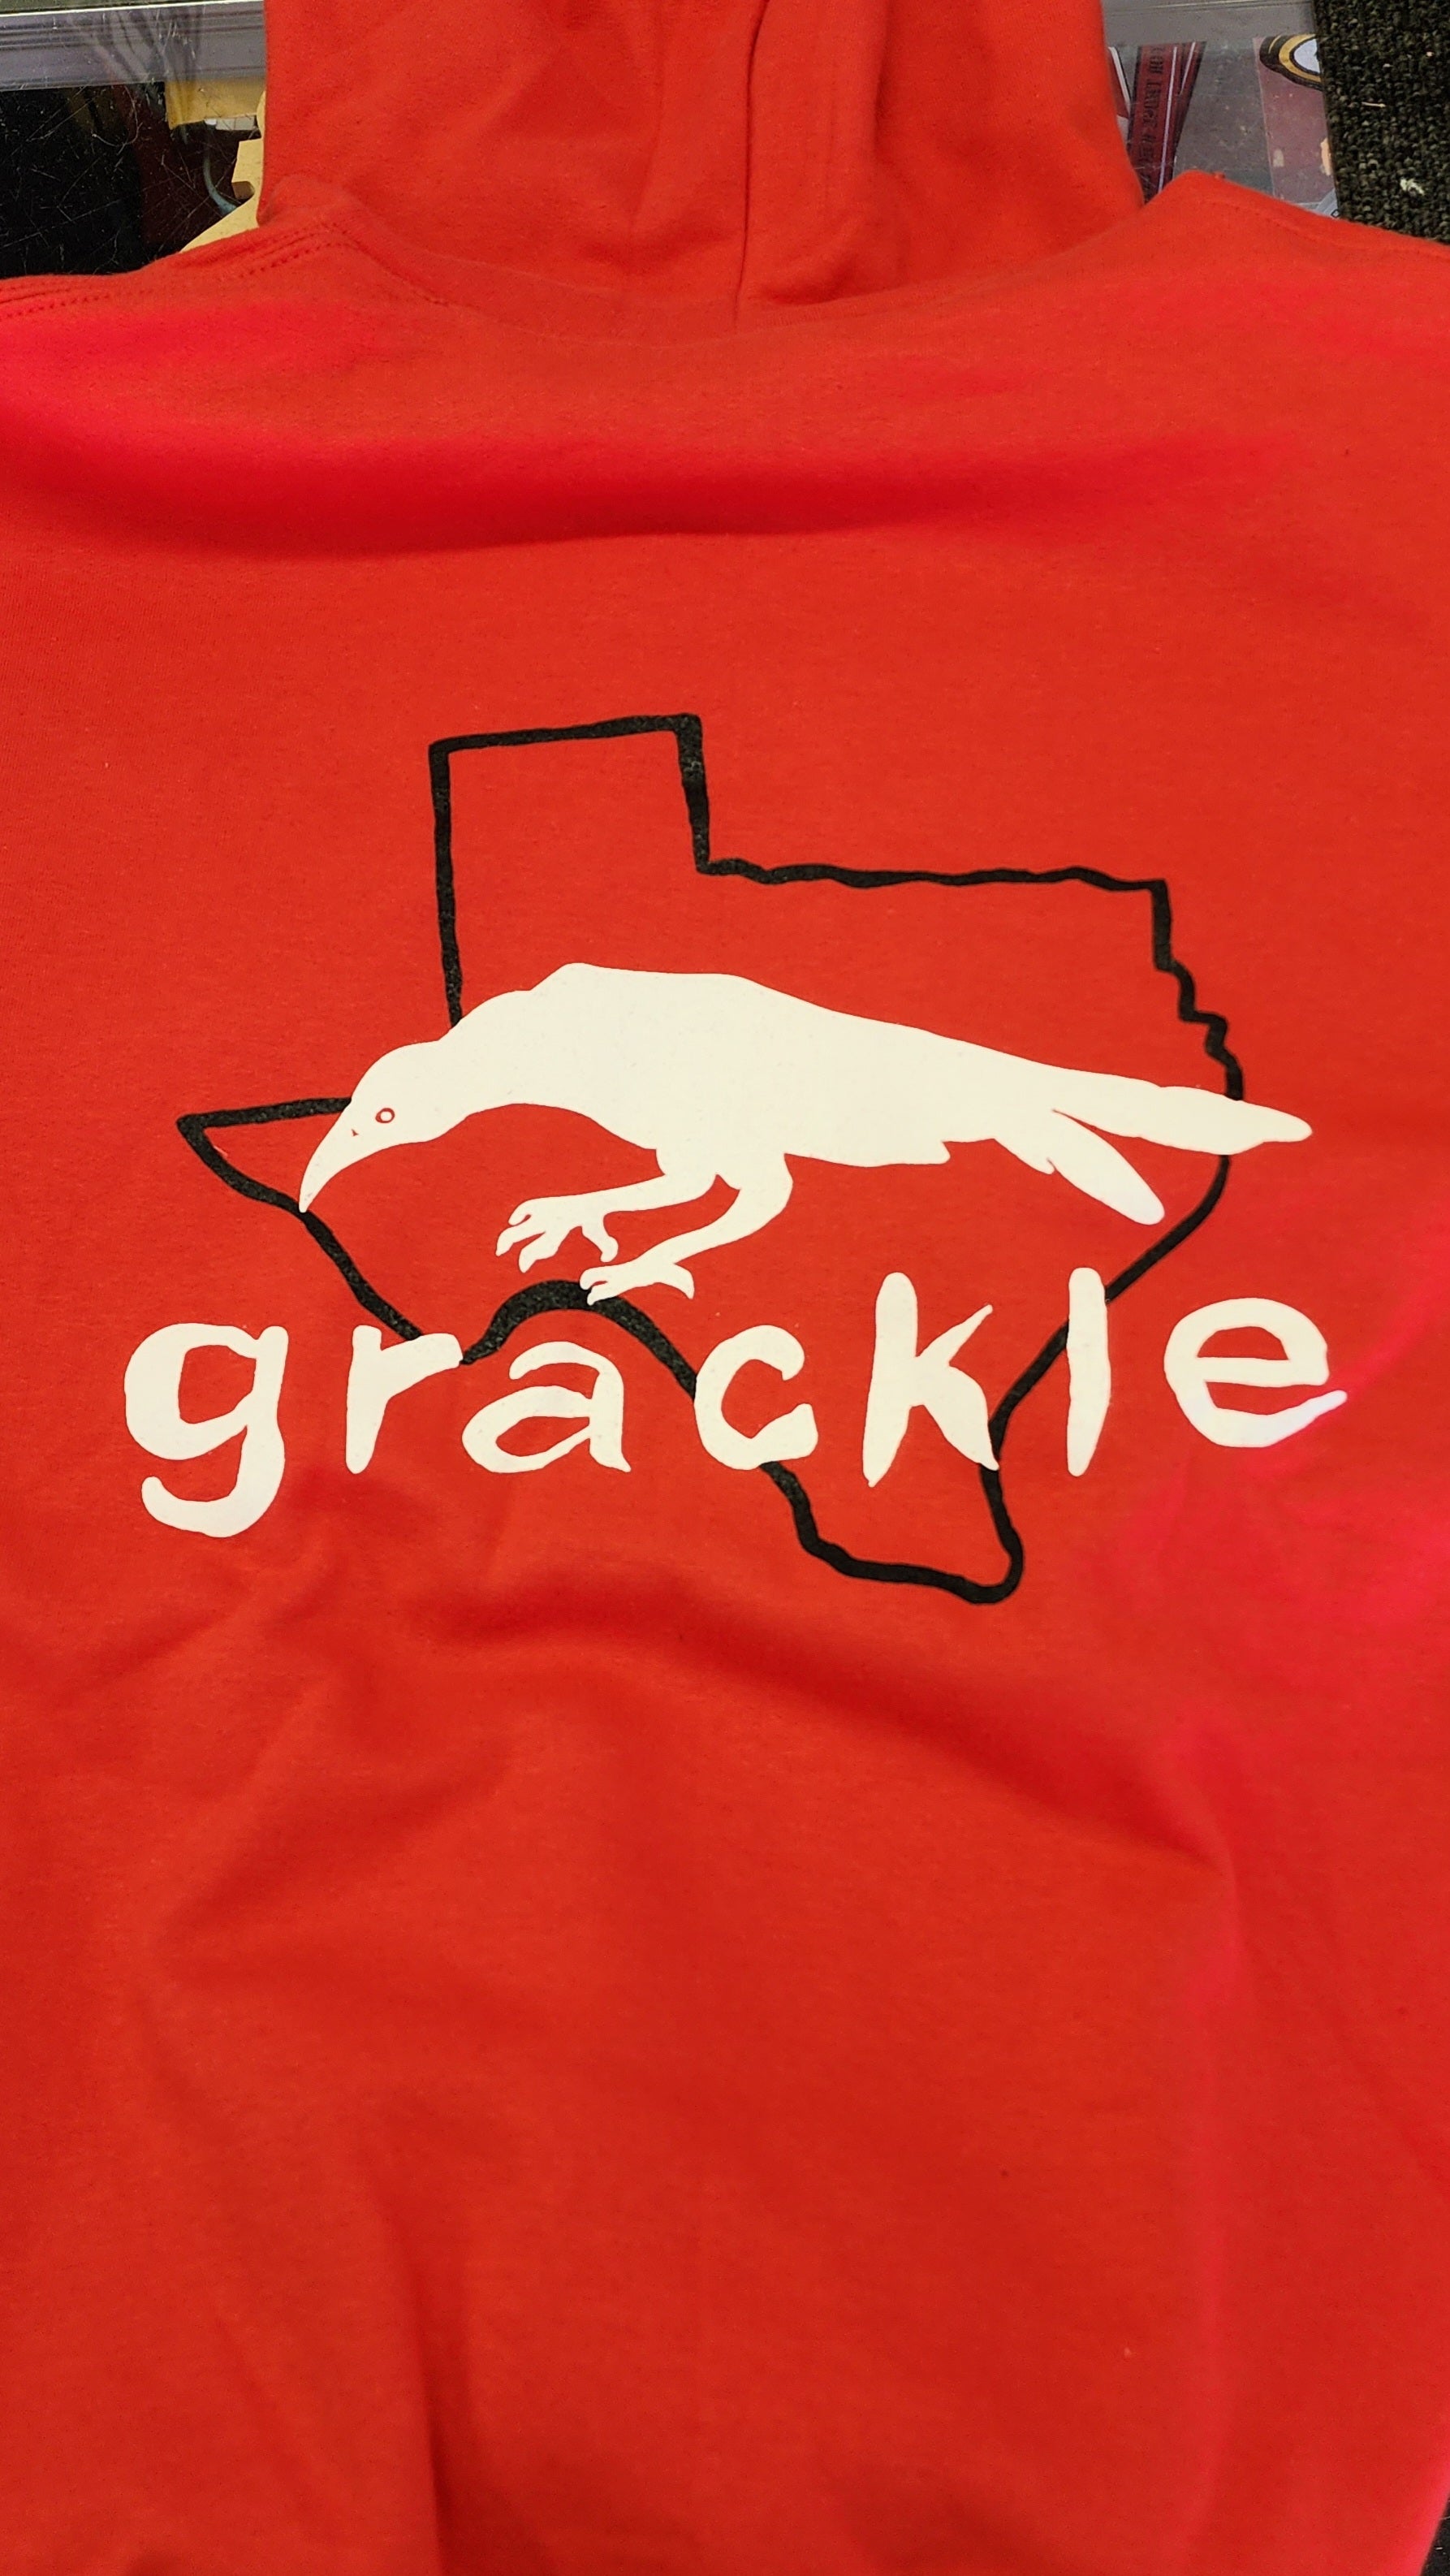 Grackle Skateboards Hoodie - Red